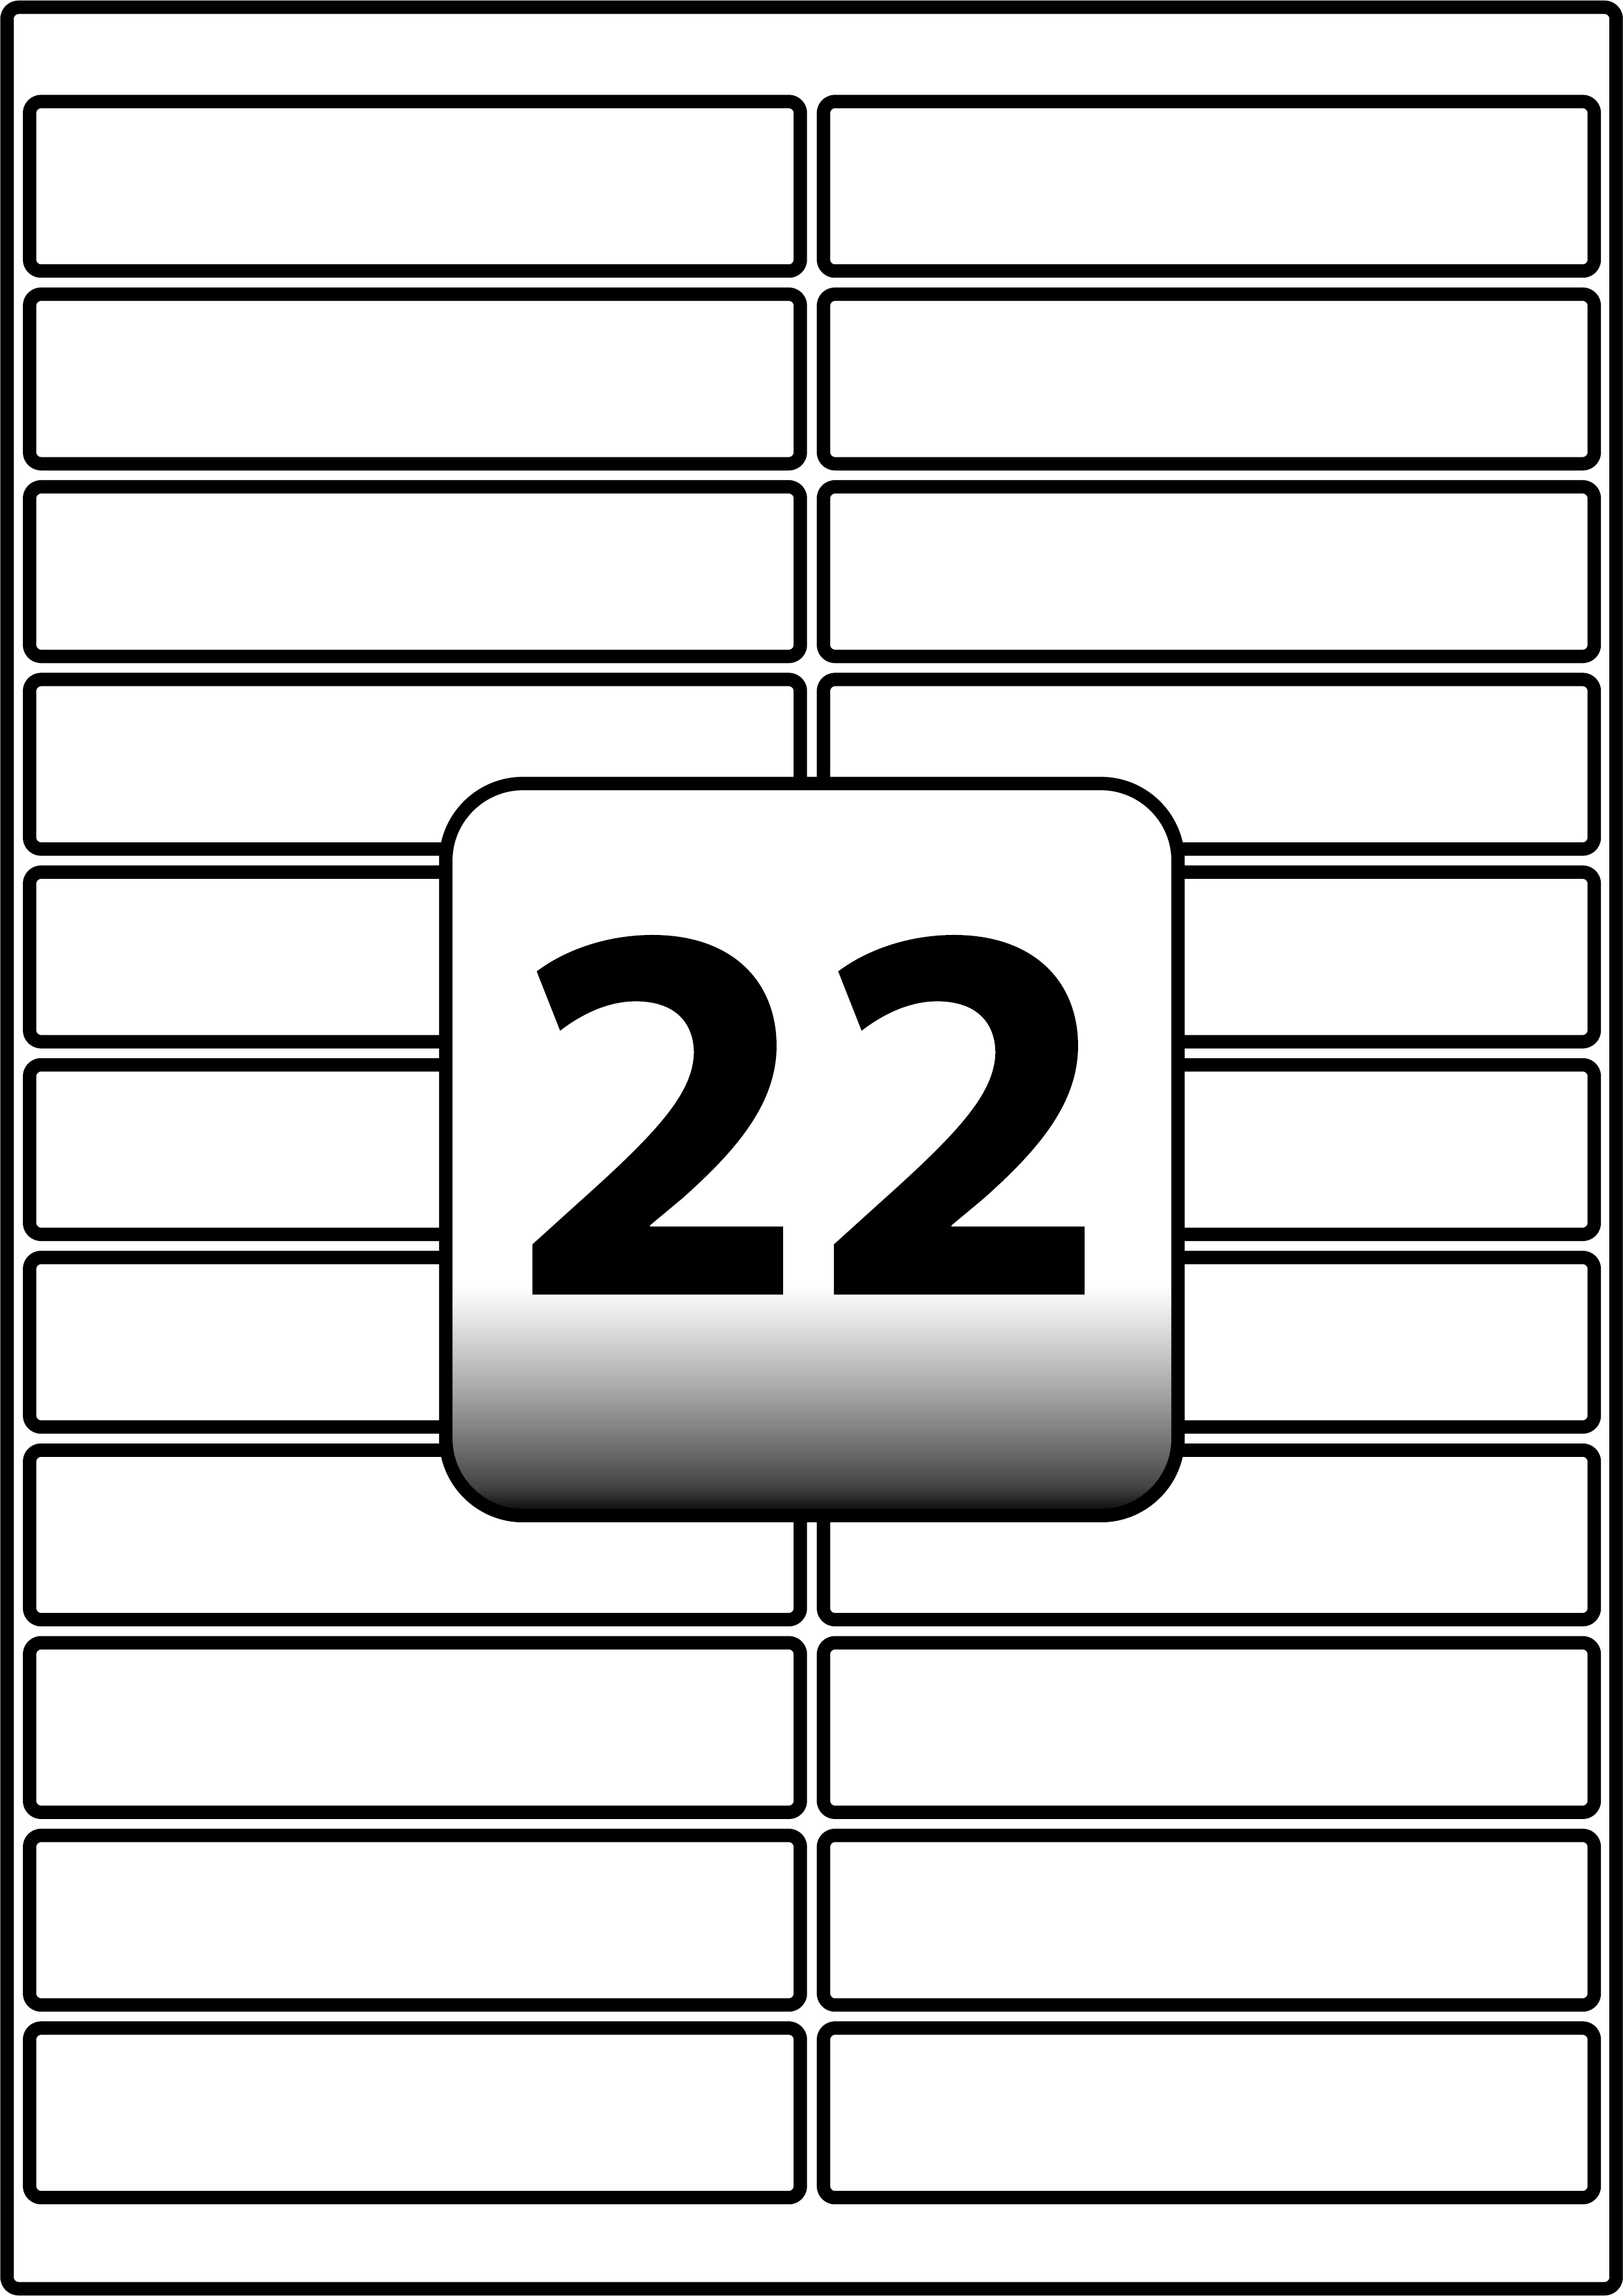 22-rectangle-labels-per-a4-sheet-100-mm-x-22-mm-flexi-labels